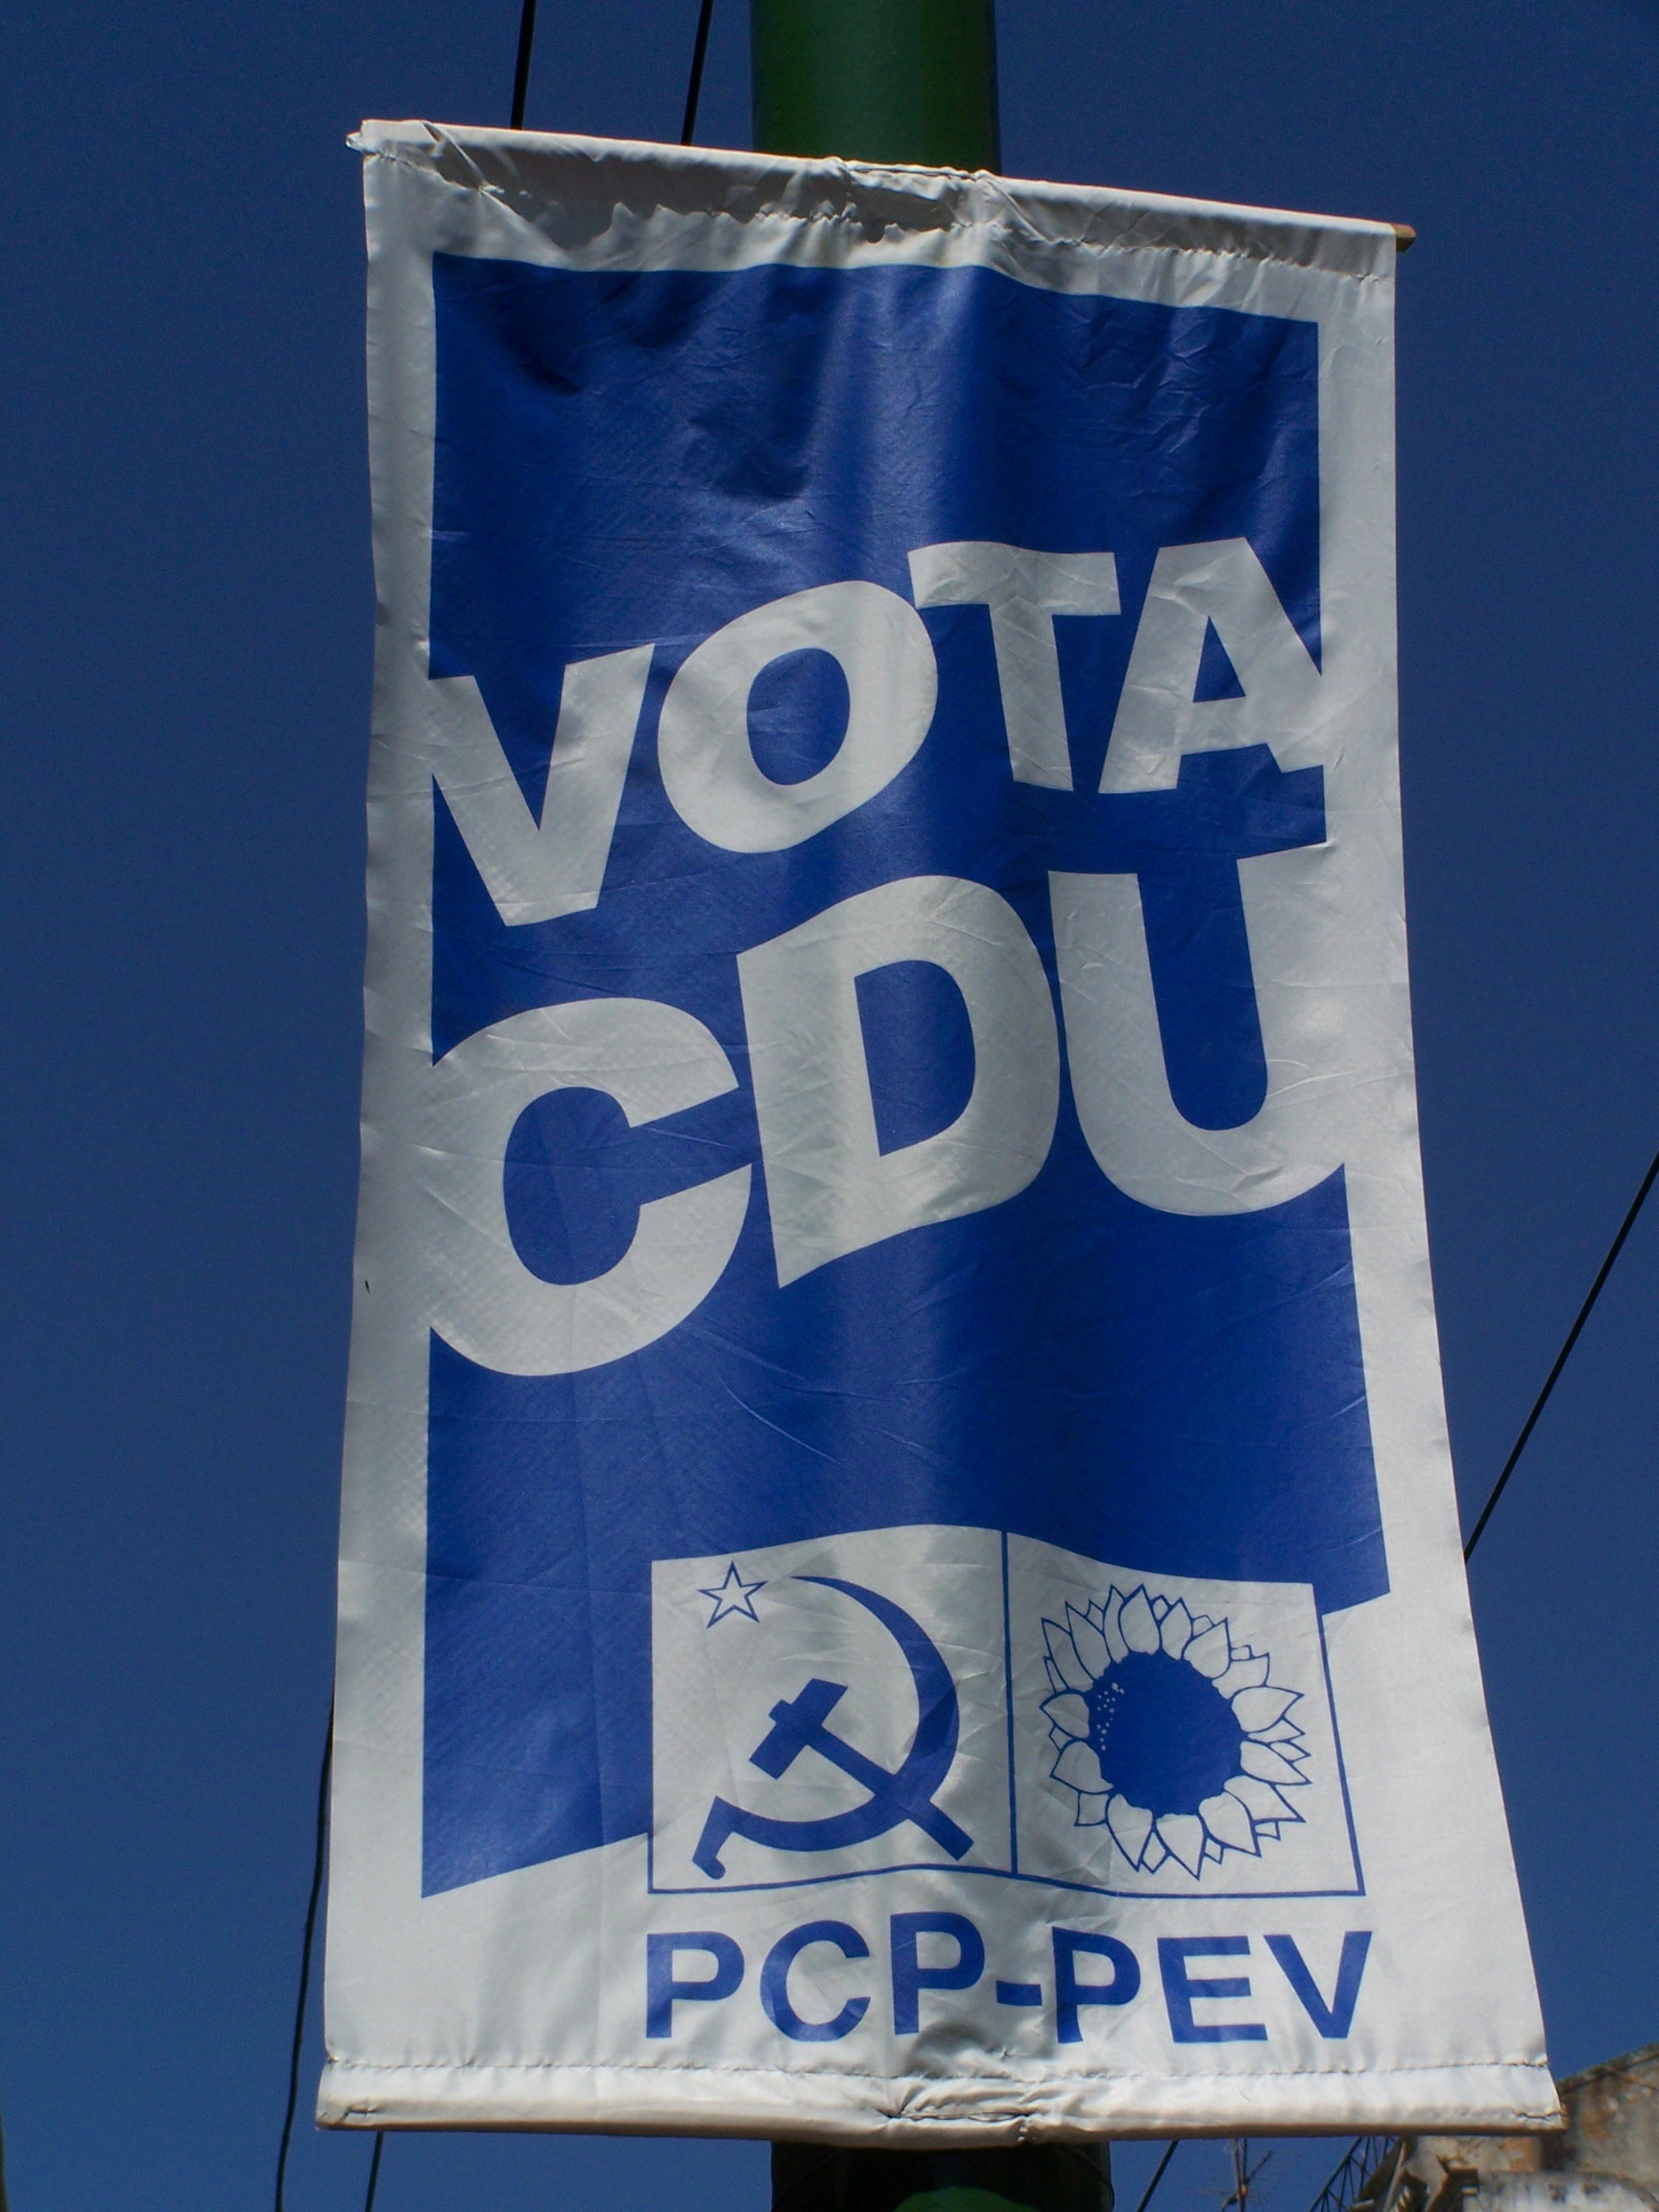 6,46% pour la coalition PCP-PEV lors des élections législatives au Portugal